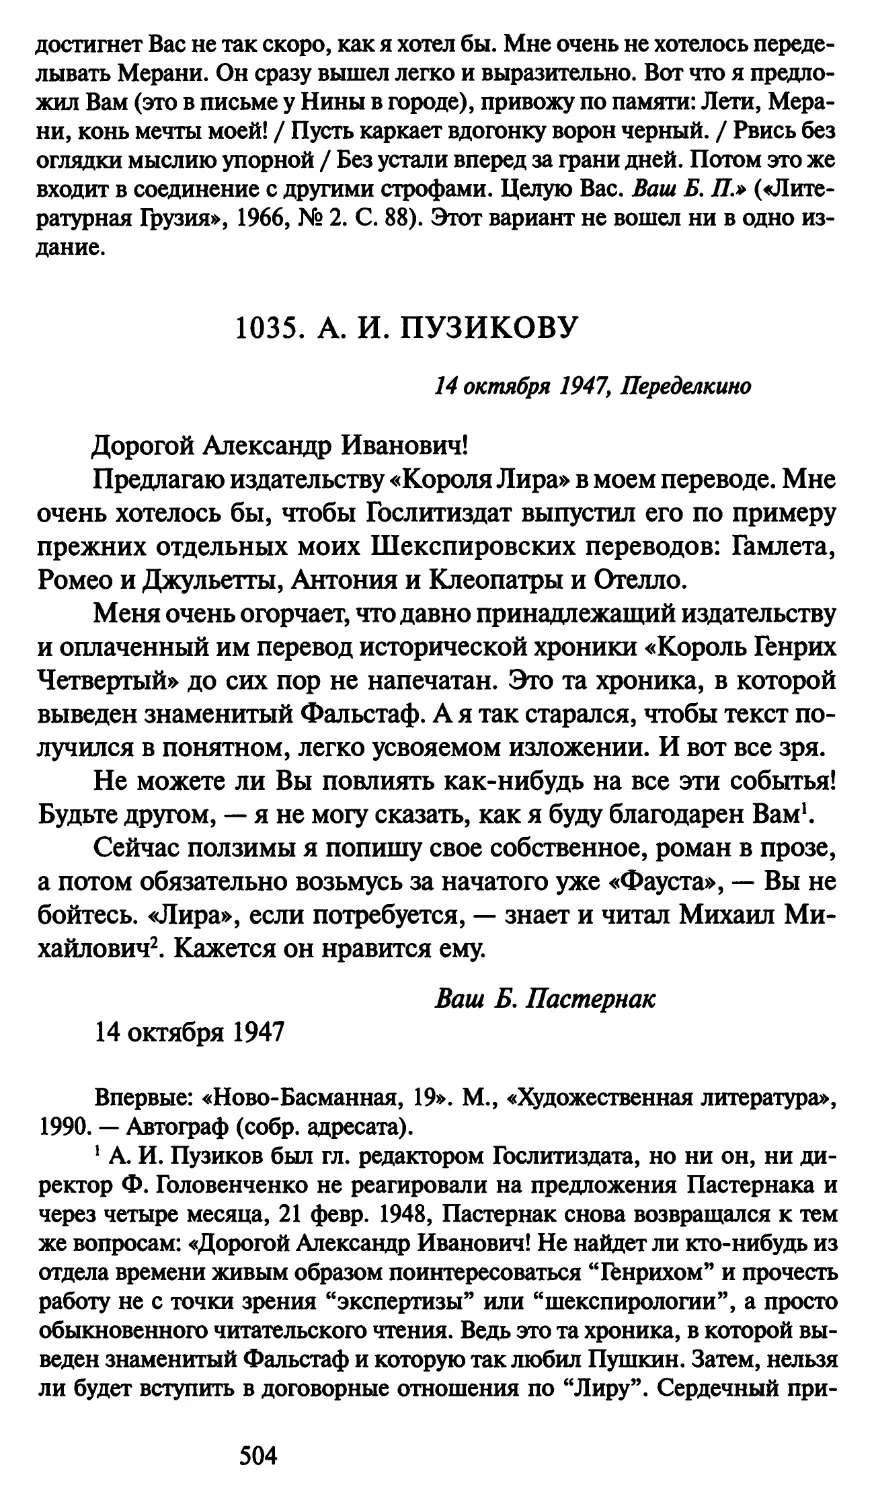 1035. А. И. Пузикову 14 октября 1947